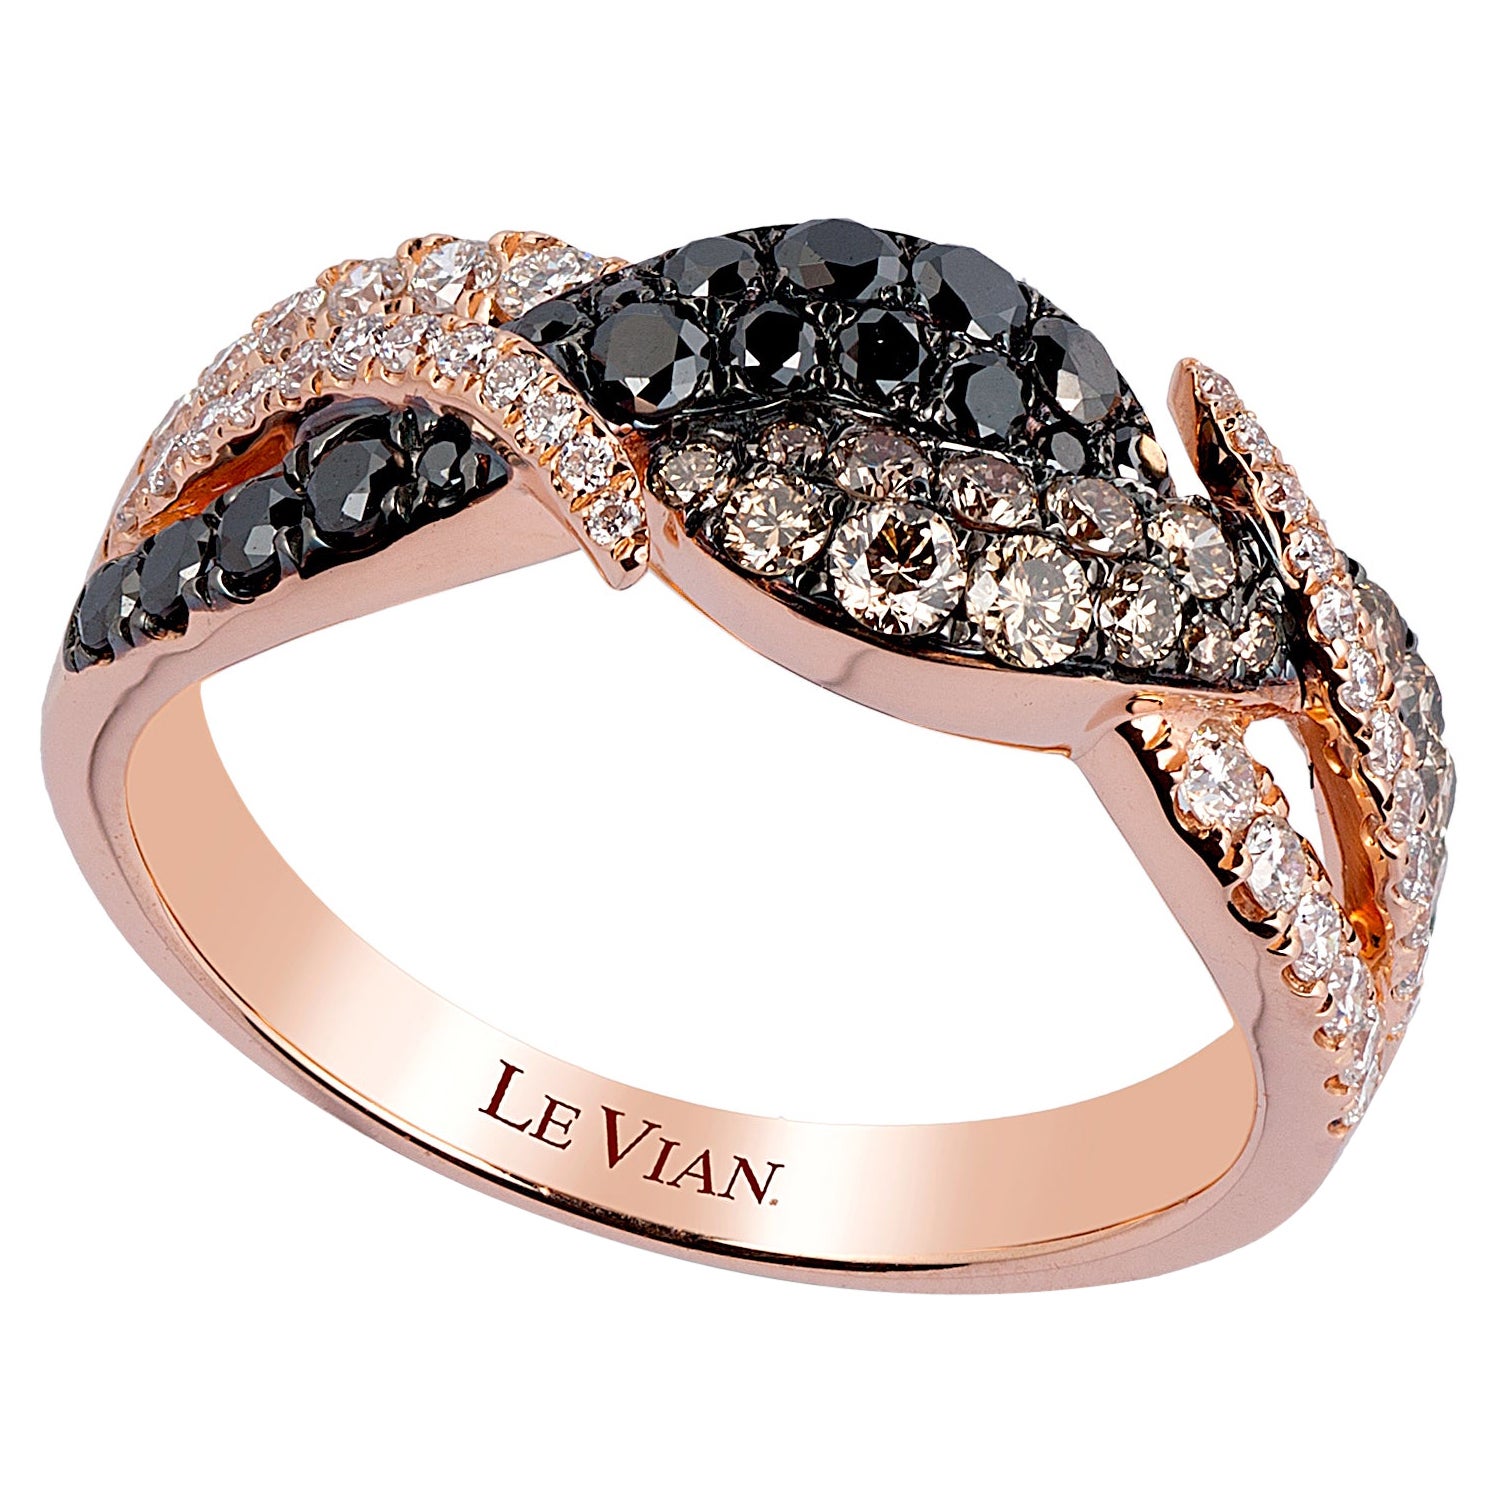 LeVian Bague cocktail classique en or rose 14 carats avec diamants ronds noirs, brun chocolat